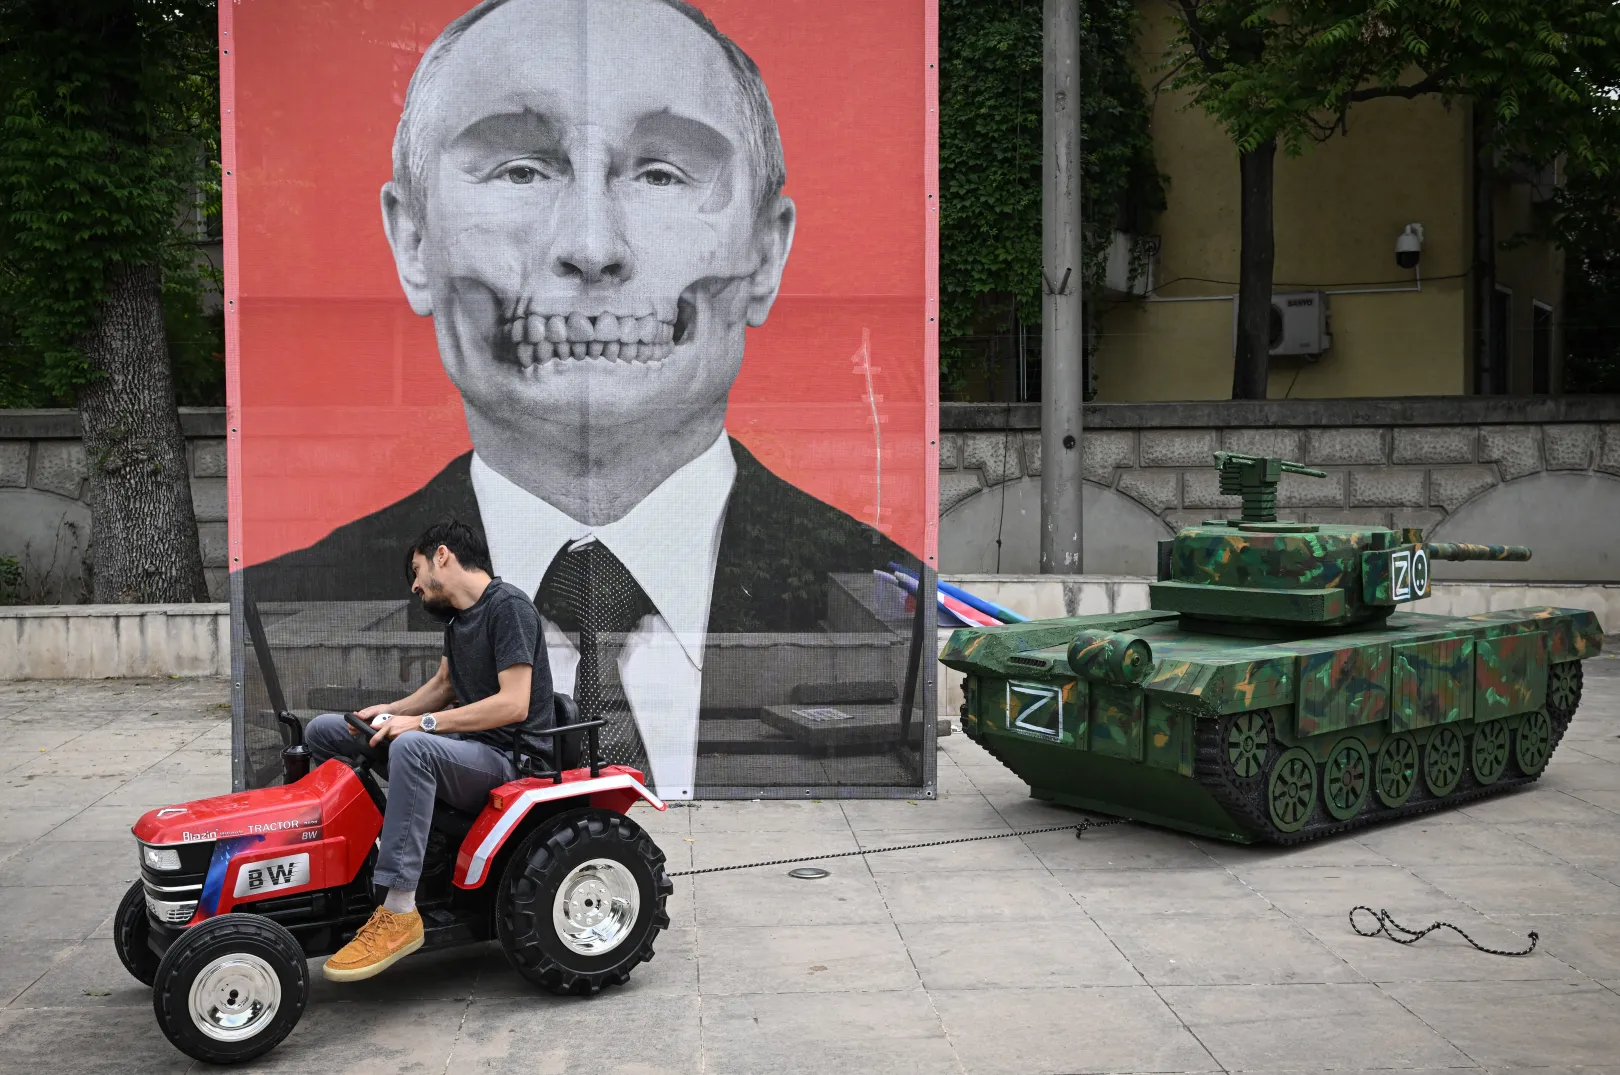 Az Aresel roma civil szervezet egyik tagja odahúz egy orosz tank makettet Vlagyimir Putyin orosz elnök portréja elé, 2022. május 16-án. Több roma aktivista is tiltakozott a bukaresti orosz nagykövetség előtt, miután a sajtó egy részében hamisan azt állították, hogy az ukrán romák elloptak egy orosz tankot – Fotó: Daniel Mihailescu / AFP